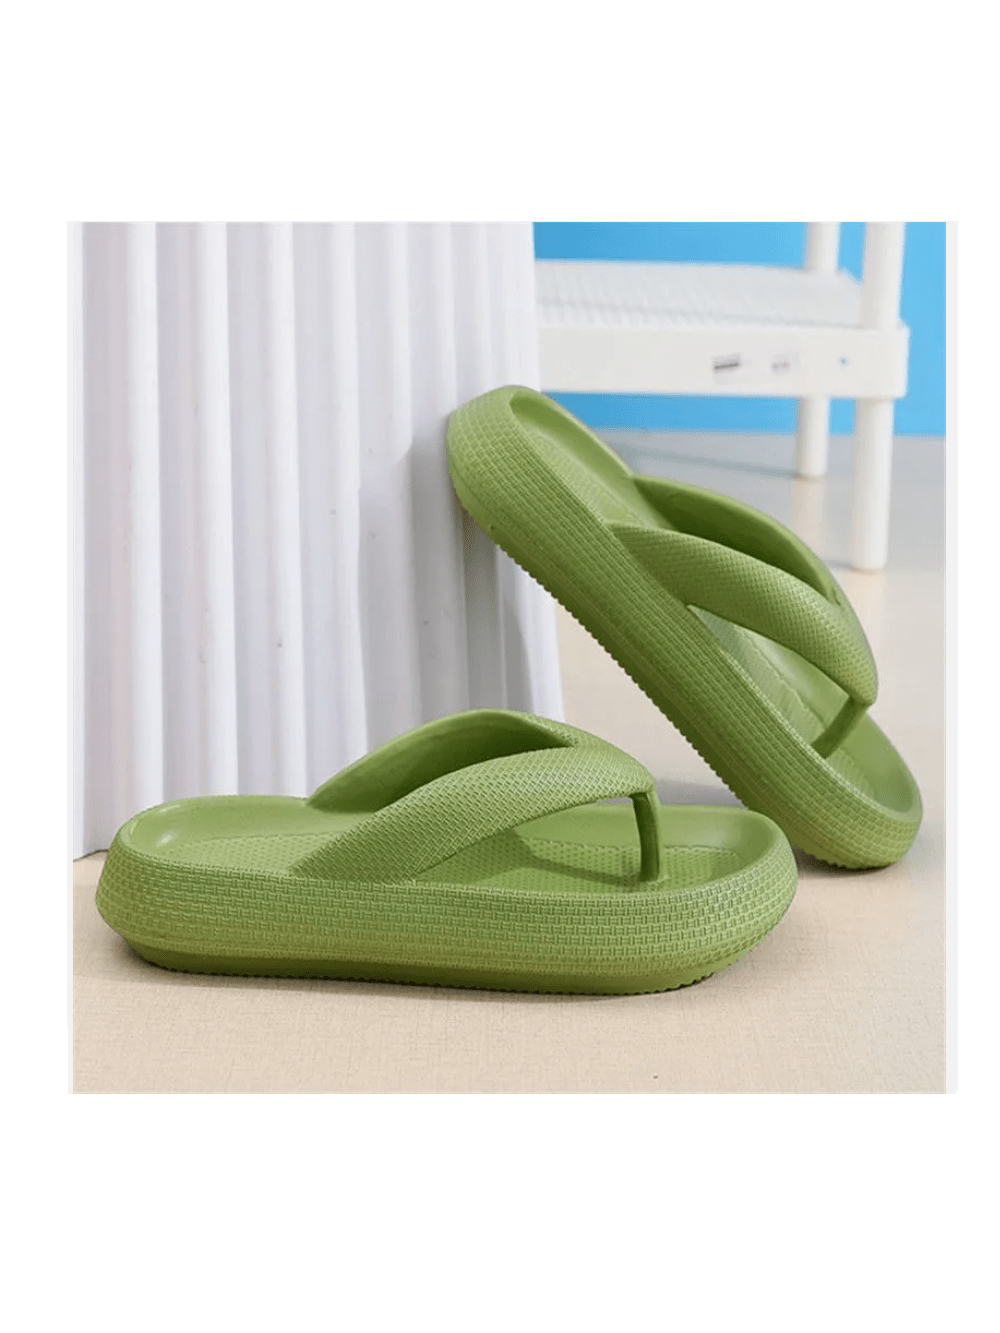 Womens Men Thick Platform Thong Flops Sandals Beach Comfort EVA Slipper Shoes-Green-2